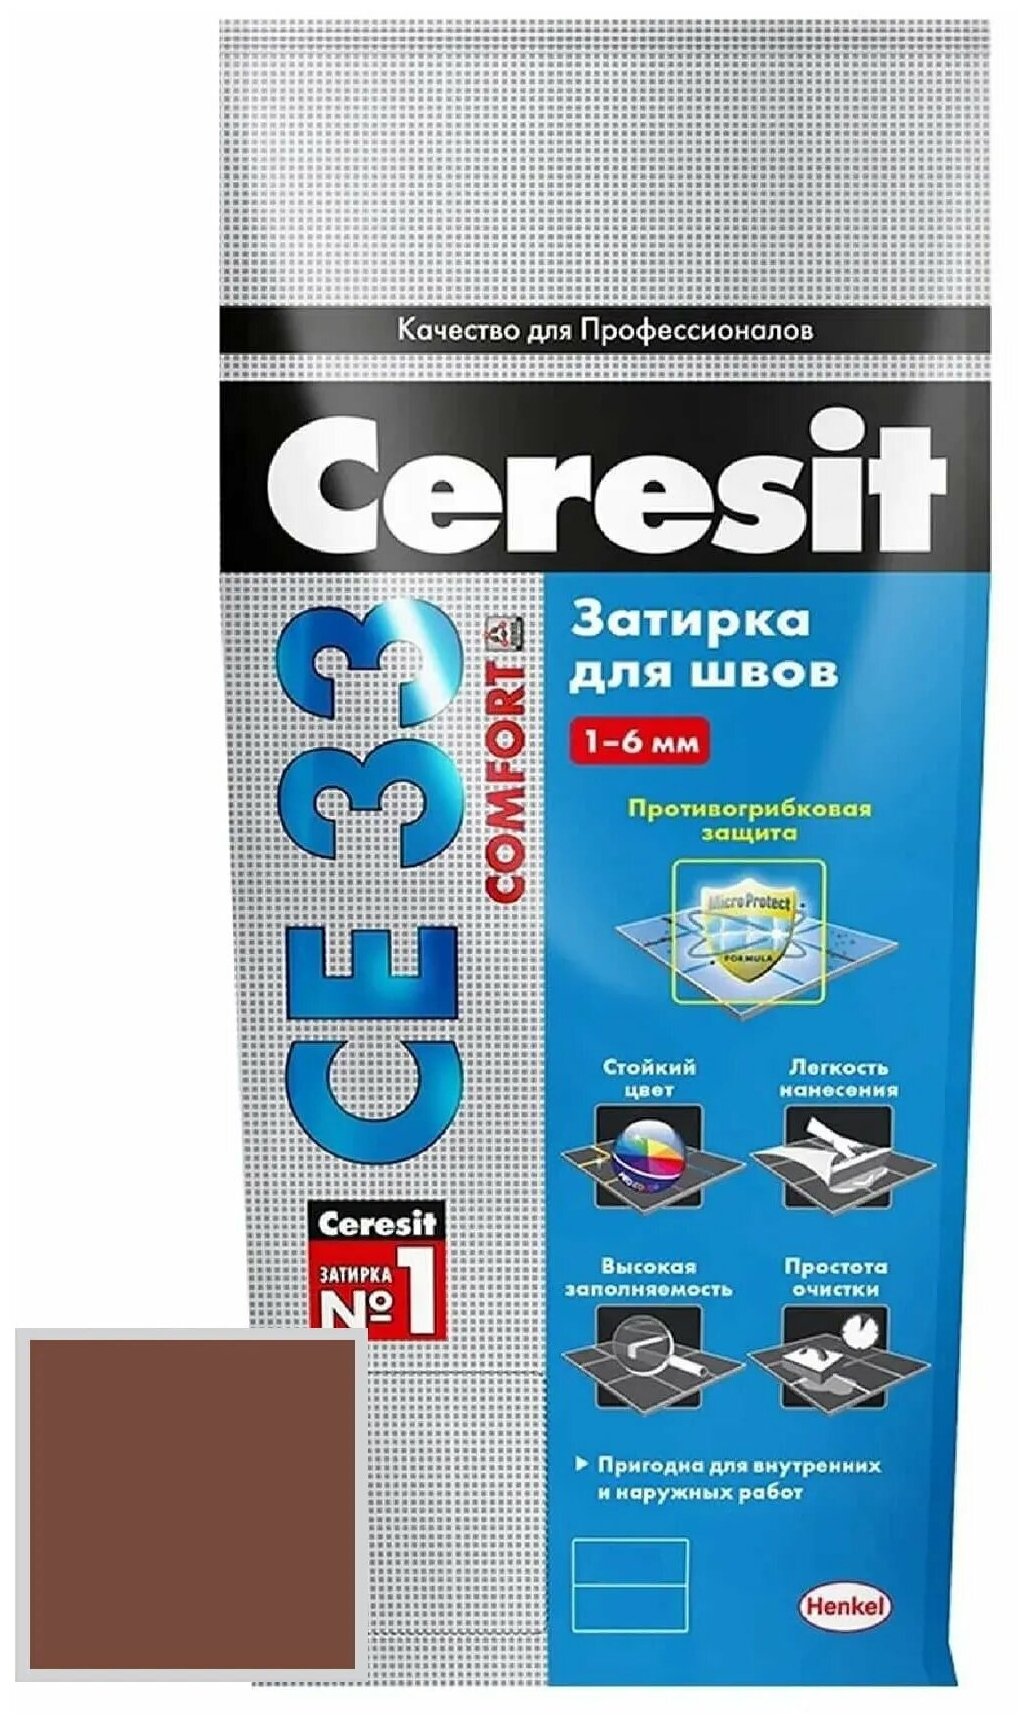    Ceresit  33 Comfort (2) - 58